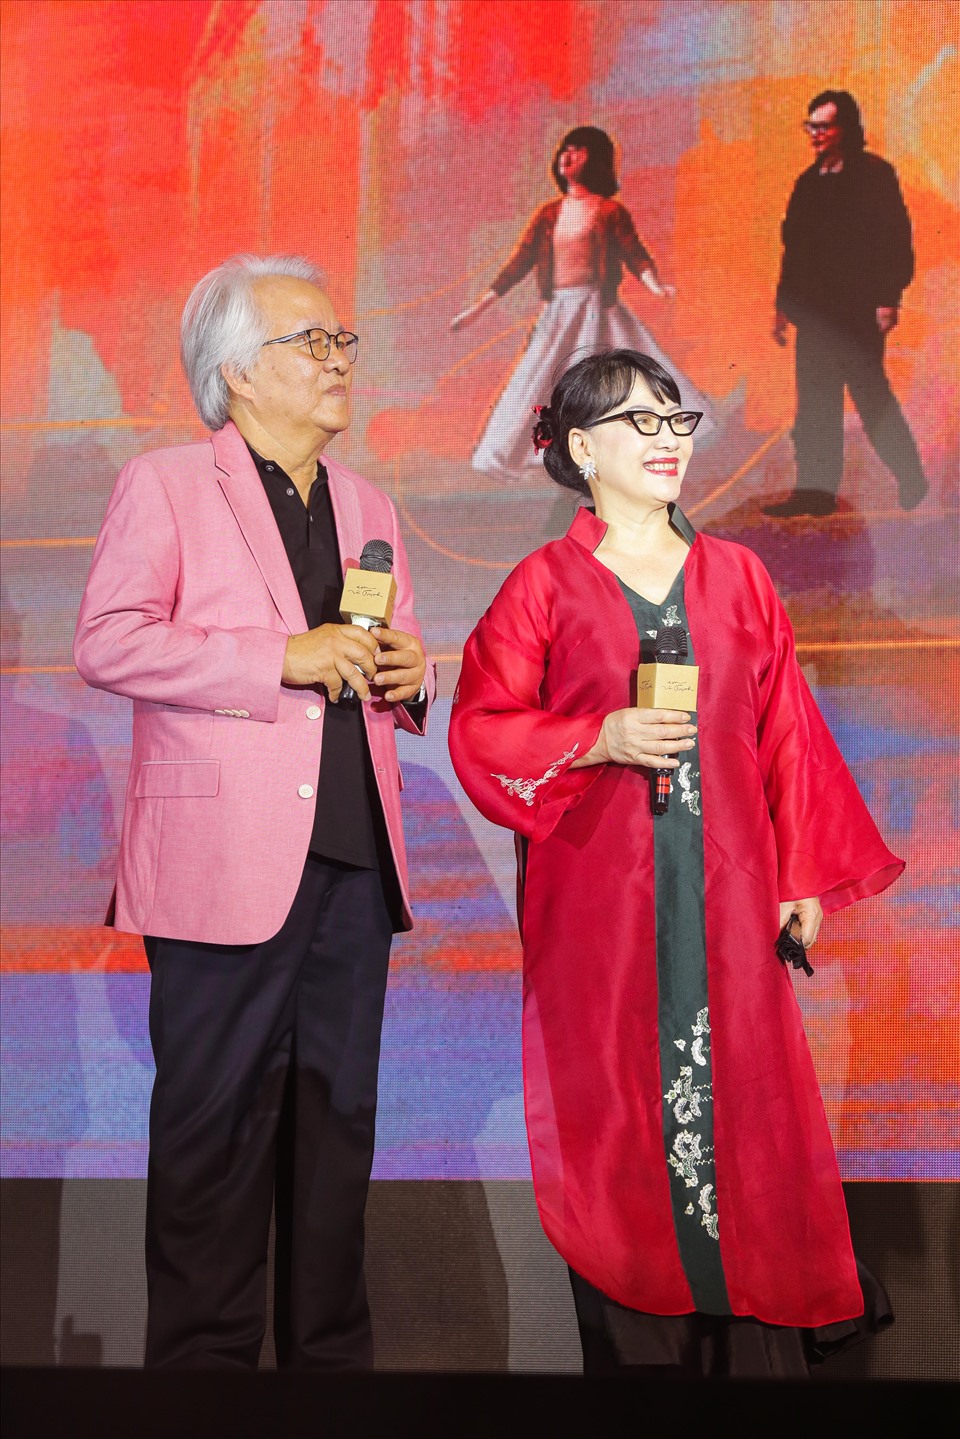 Kết thúc sự kiện thảm đỏ là Hoàng Duyên, một nhân tố trong dự án đặc biệt “Gen Z và Trịnh” gồm những nghệ sĩ trẻ của thế hệ gen Z hát nhạc Trịnh bằng tất cả sức trẻ của mình. Cô trình bày ca khúc “Mưa hồng” trong sự cổ vũ của khách mời tham dự họp báo.